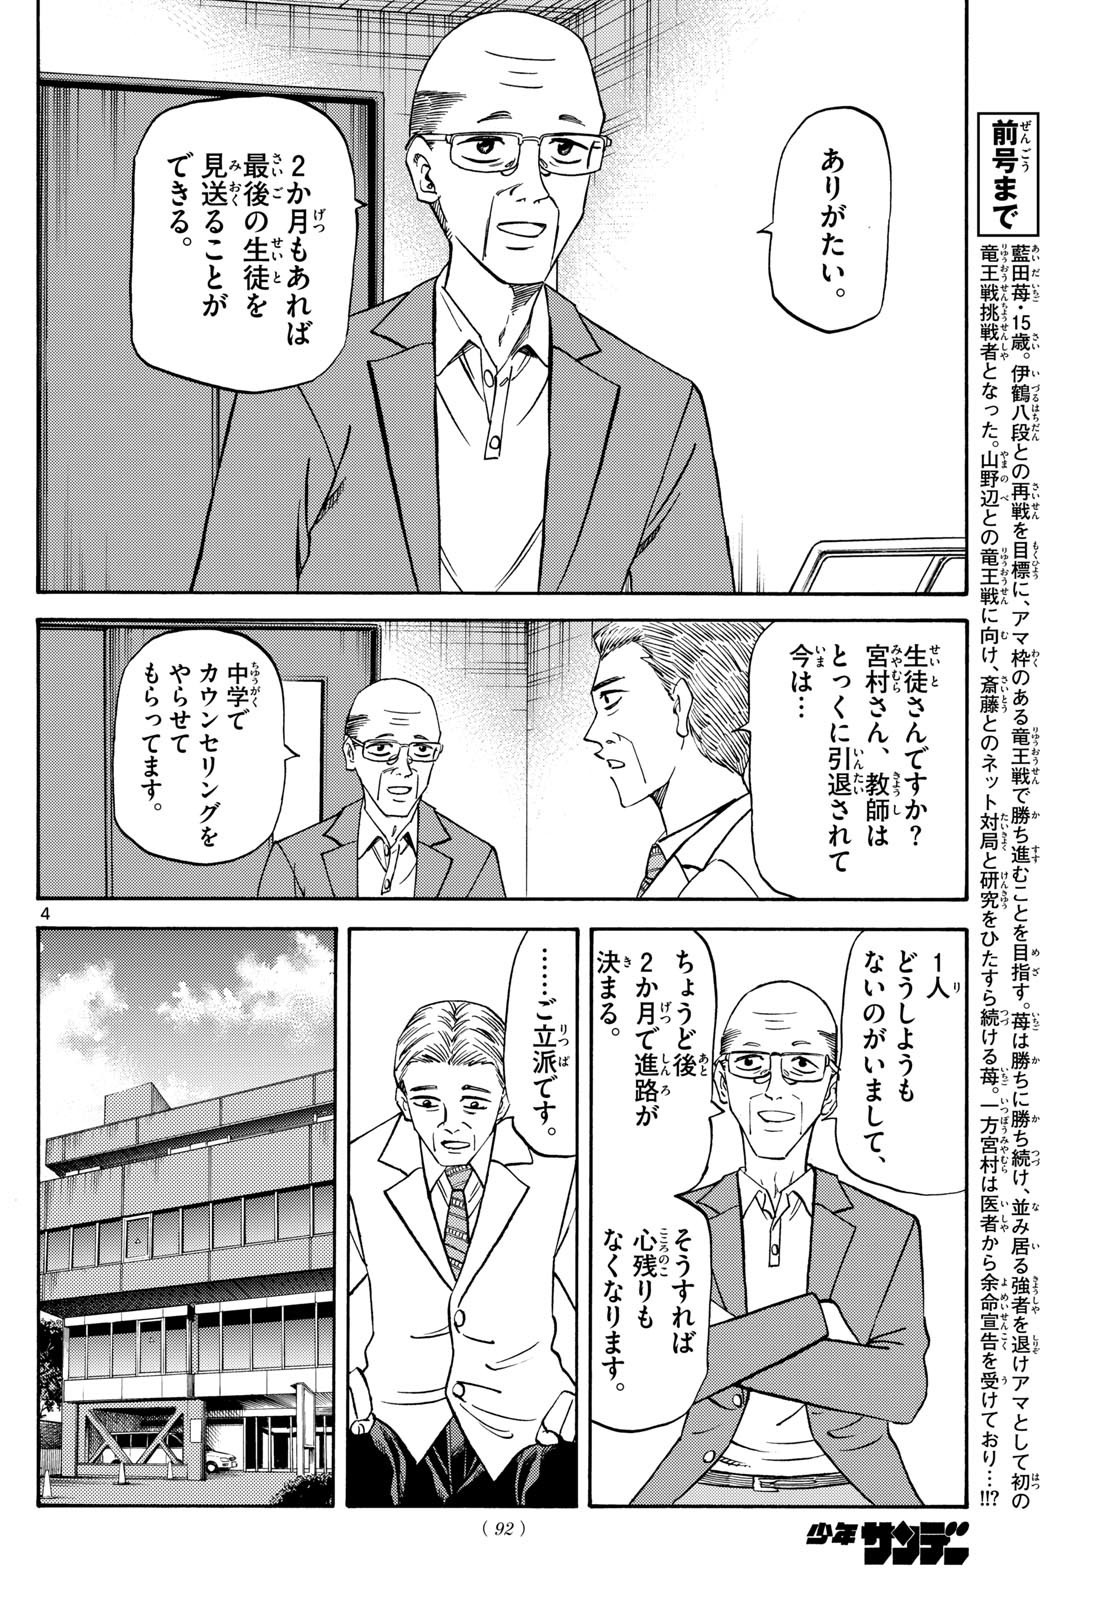 Ryu-to-Ichigo - Chapter 153 - Page 4